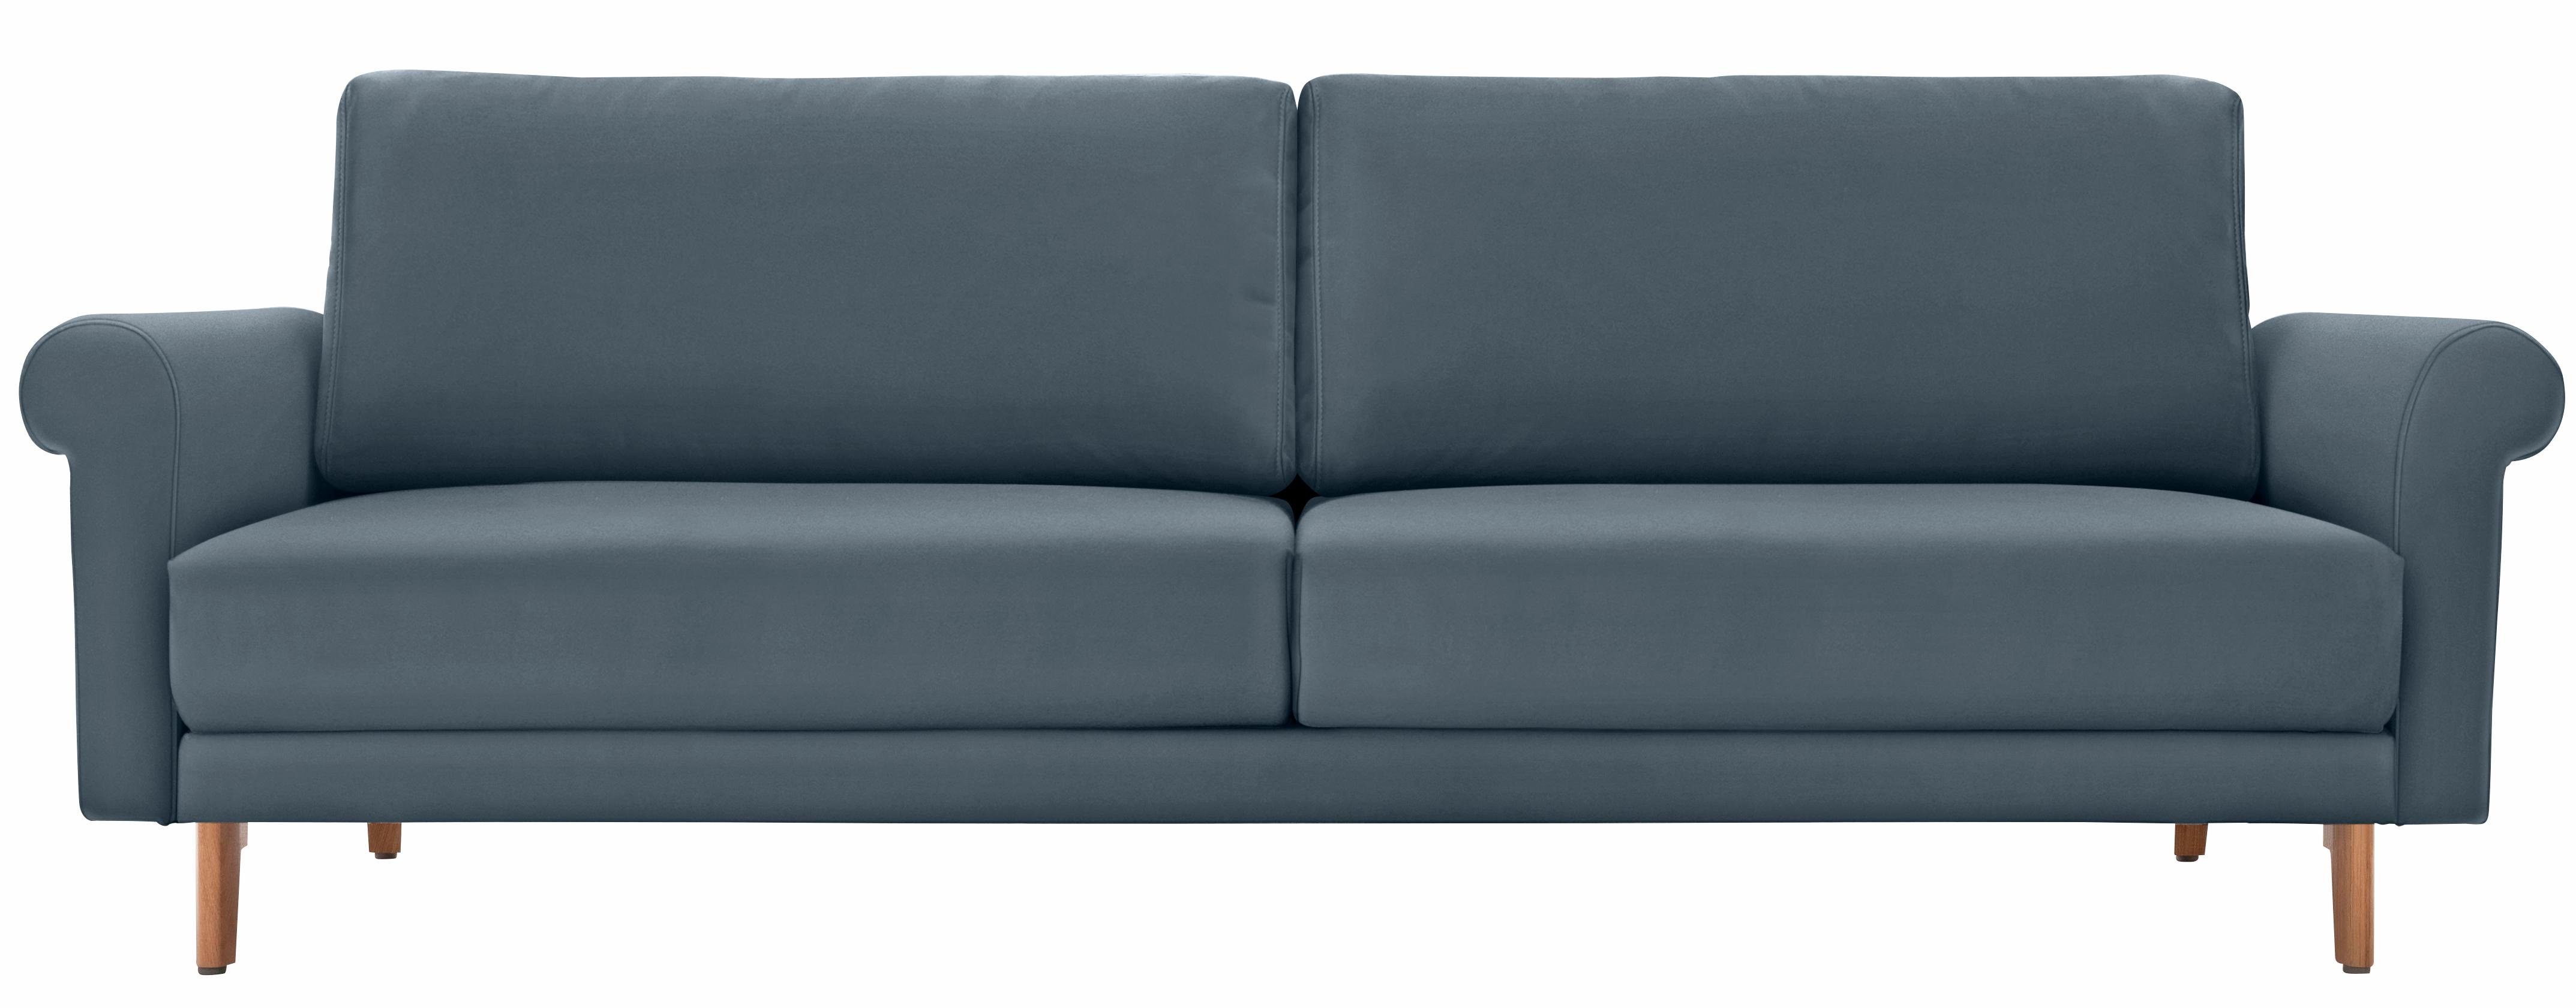 cm 2-Sitzer sofa modern in Füße Landhaus, hs.450, Nussbaum, hülsta Breite 168